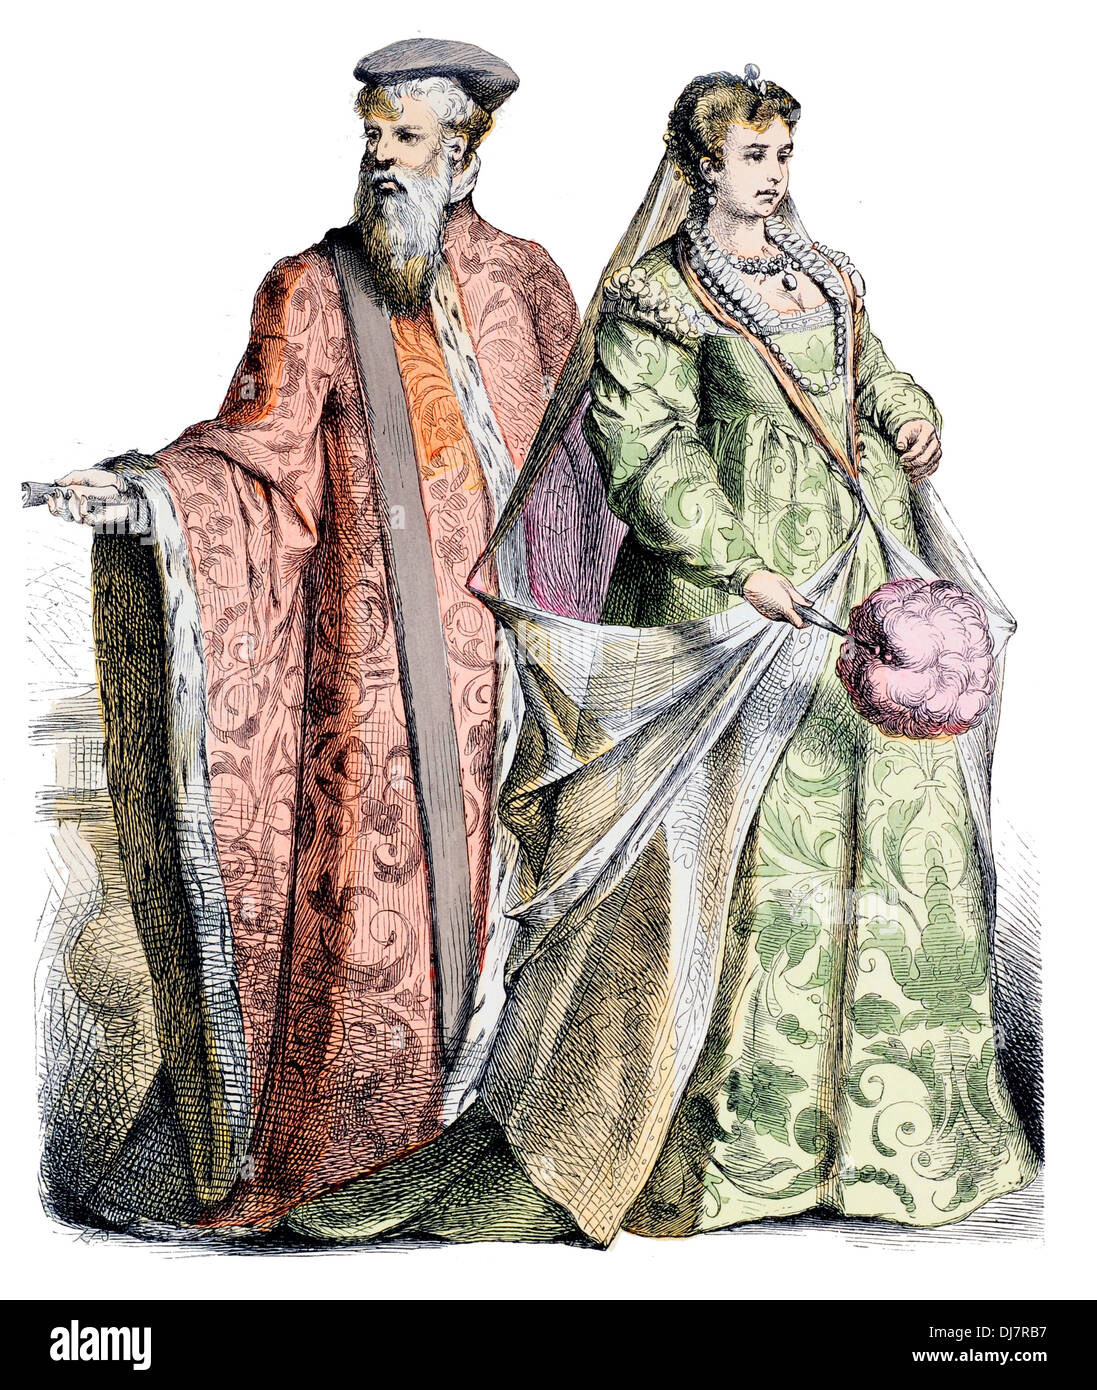 Décimosexto Siglo XVI trajes italianos de Venecia del senador y lady Foto de stock